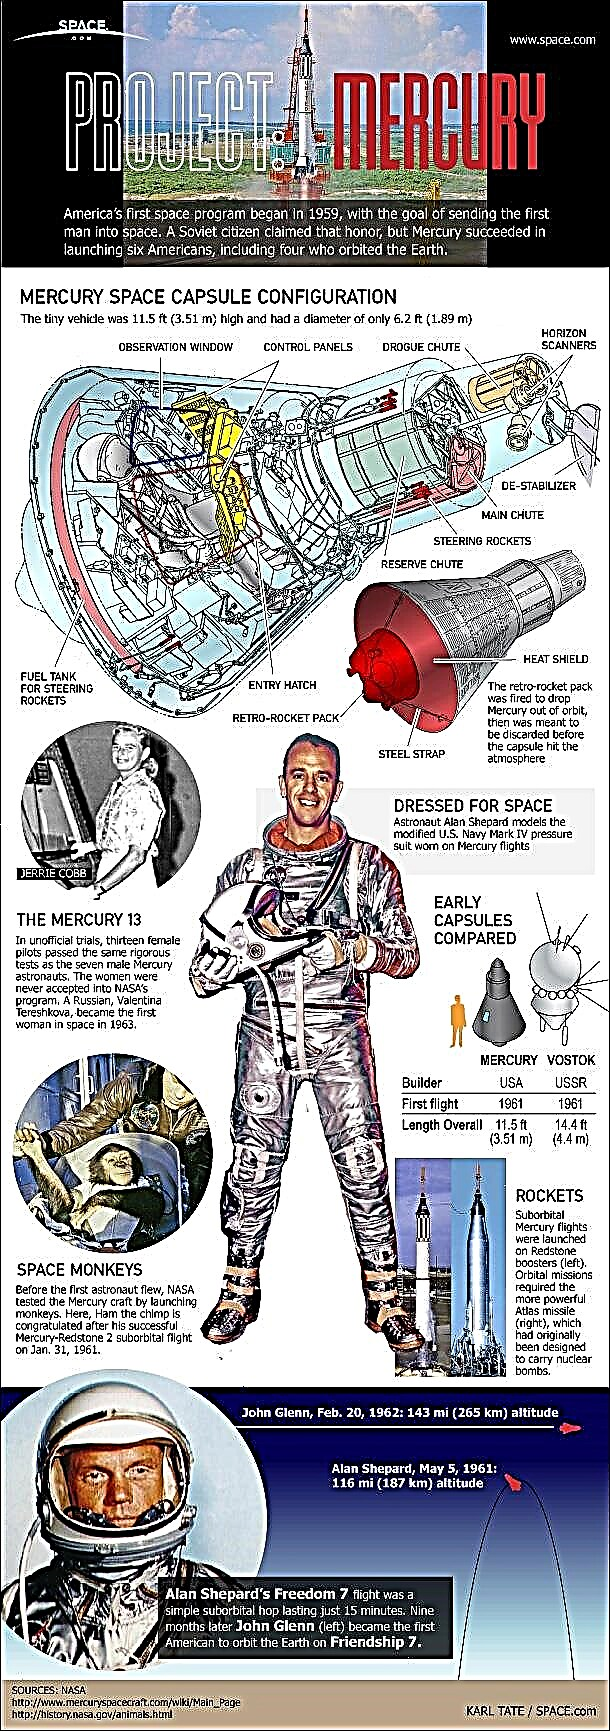 プロジェクトマーキュリー：アメリカ初の有人宇宙計画